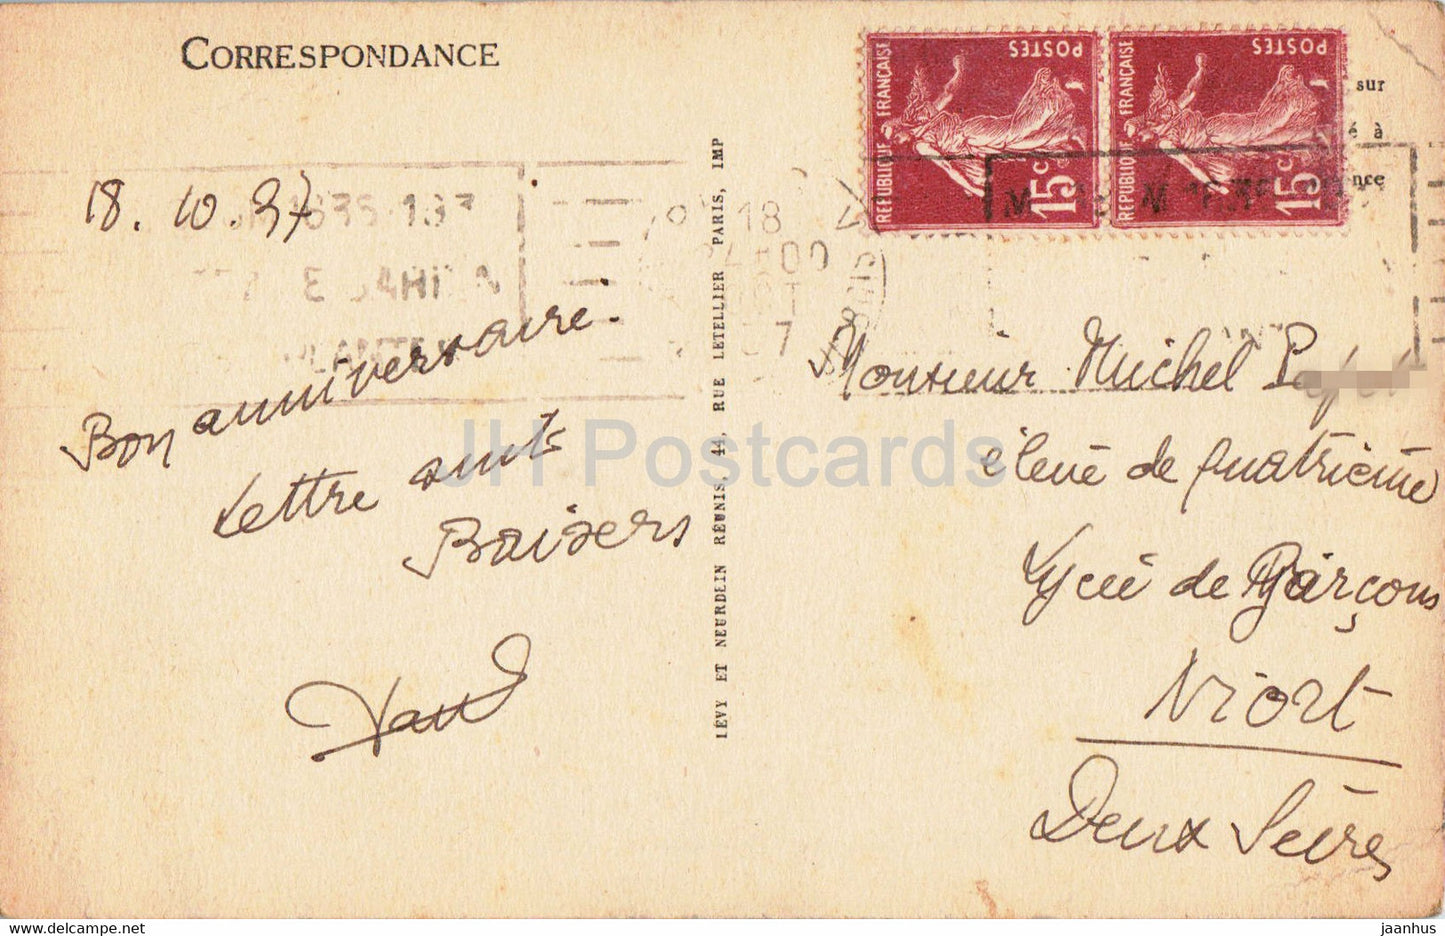 Angers - Hôtel Pinci - Cheminée Renaissance - 80 - carte postale ancienne - 1937 - France - occasion